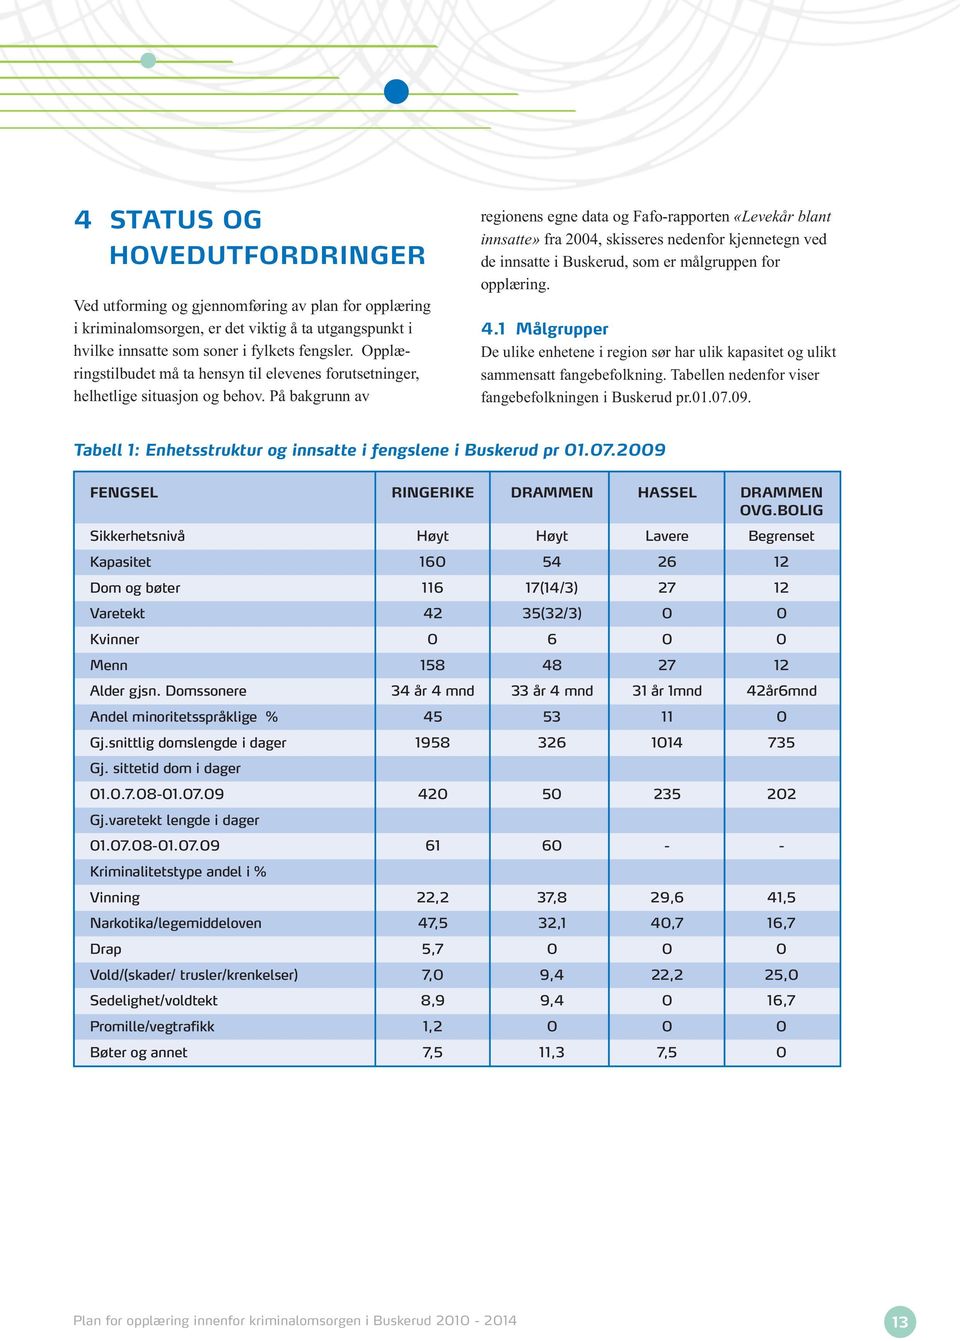 På bakgrunn av regionens egne data og Fafo-rapporten «Levekår blant innsatte» fra 2004, skisseres nedenfor kjennetegn ved de innsatte i Buskerud, som er målgruppen for opplæring. 4.